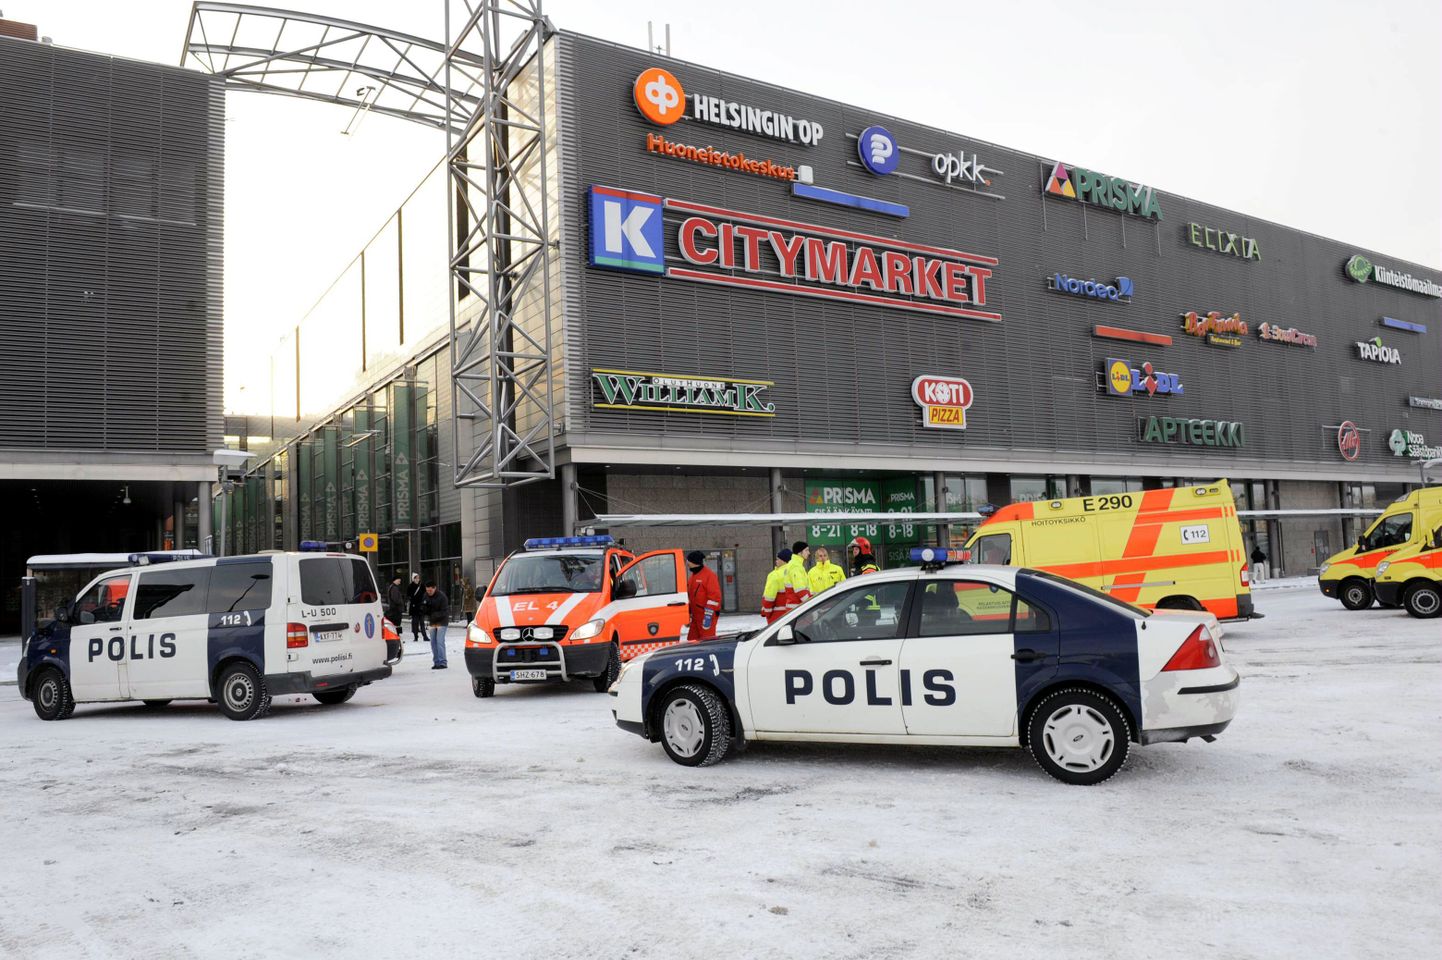 Politsei- ja kiirabisõidukid Sello keskuse juures Espoos.